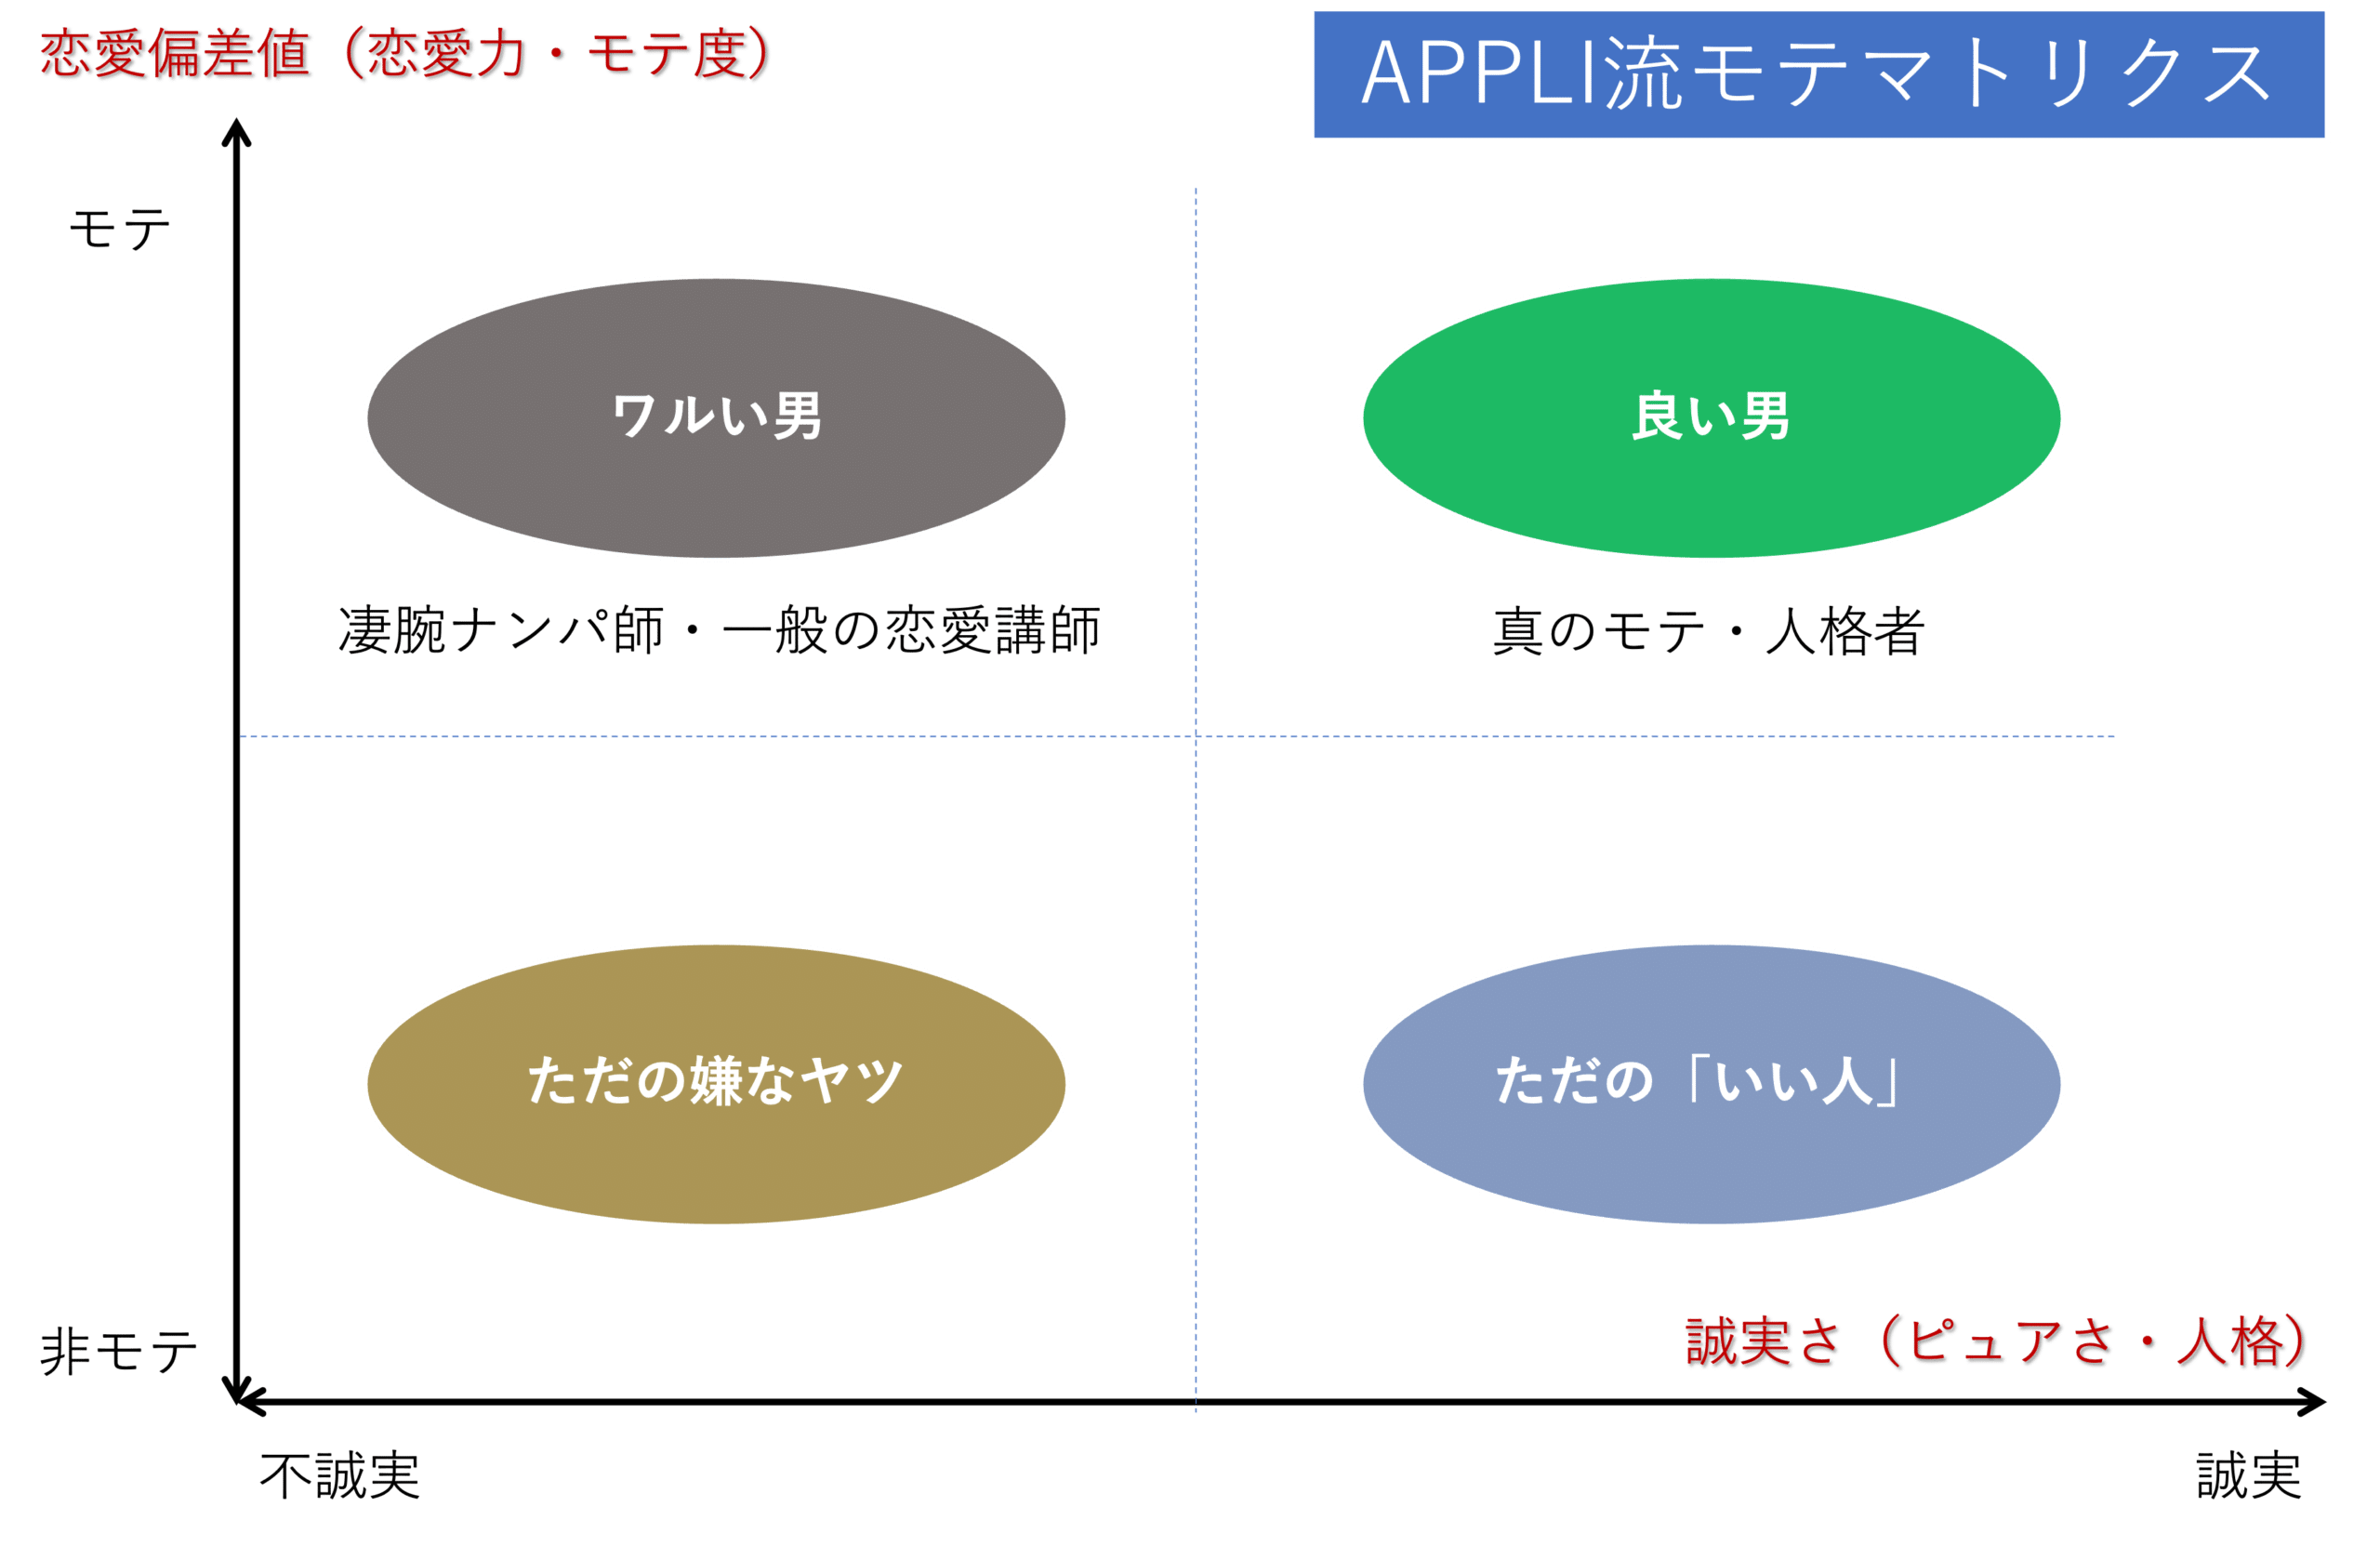 APPLI流モテマトリクス1